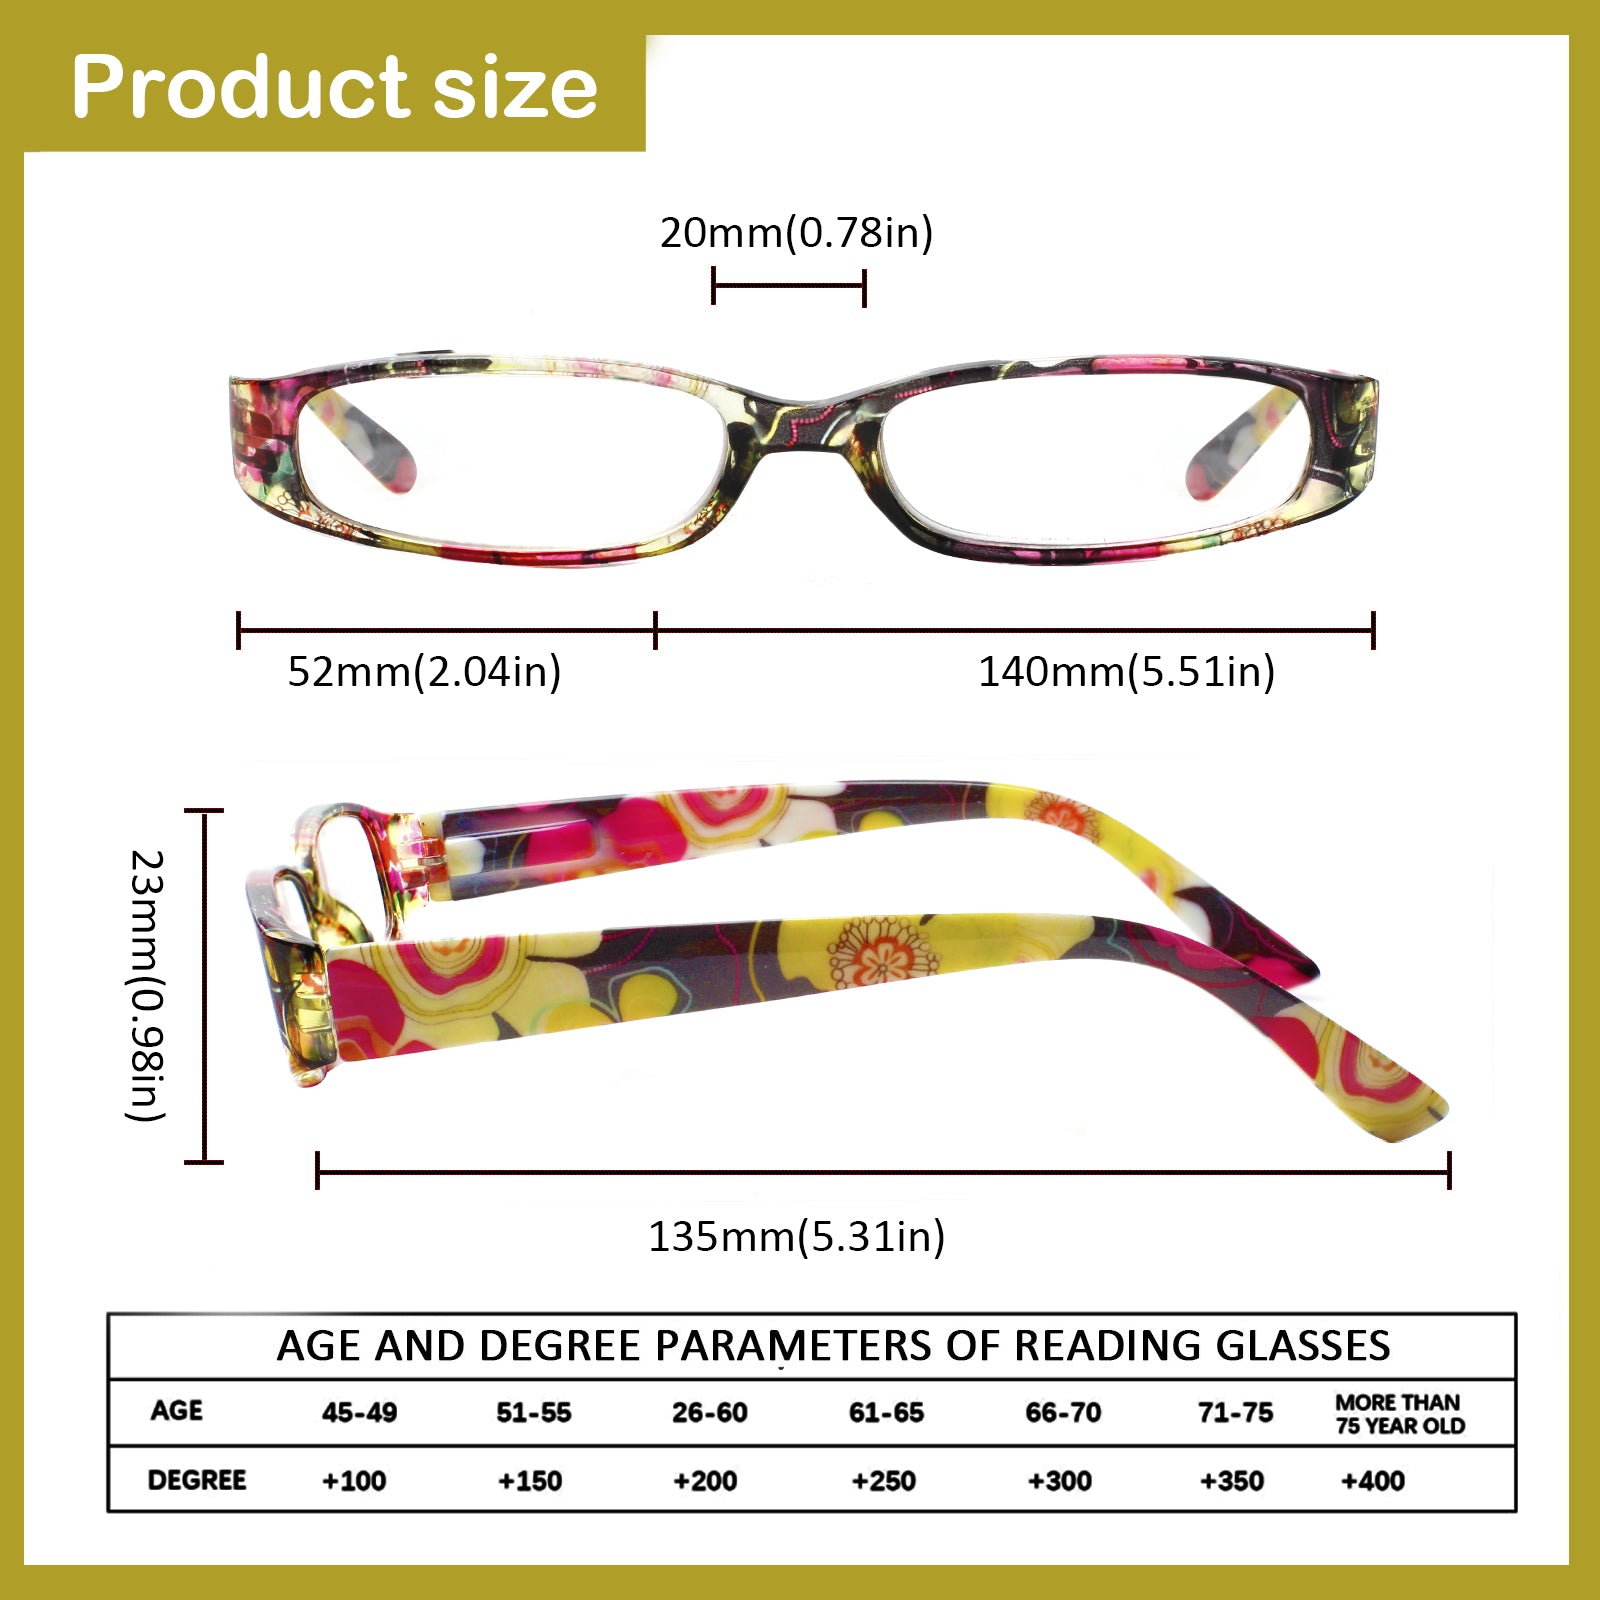 4 Pack Reading Glasses Women's HD Oval Spring Hinge Glasses 109 4C